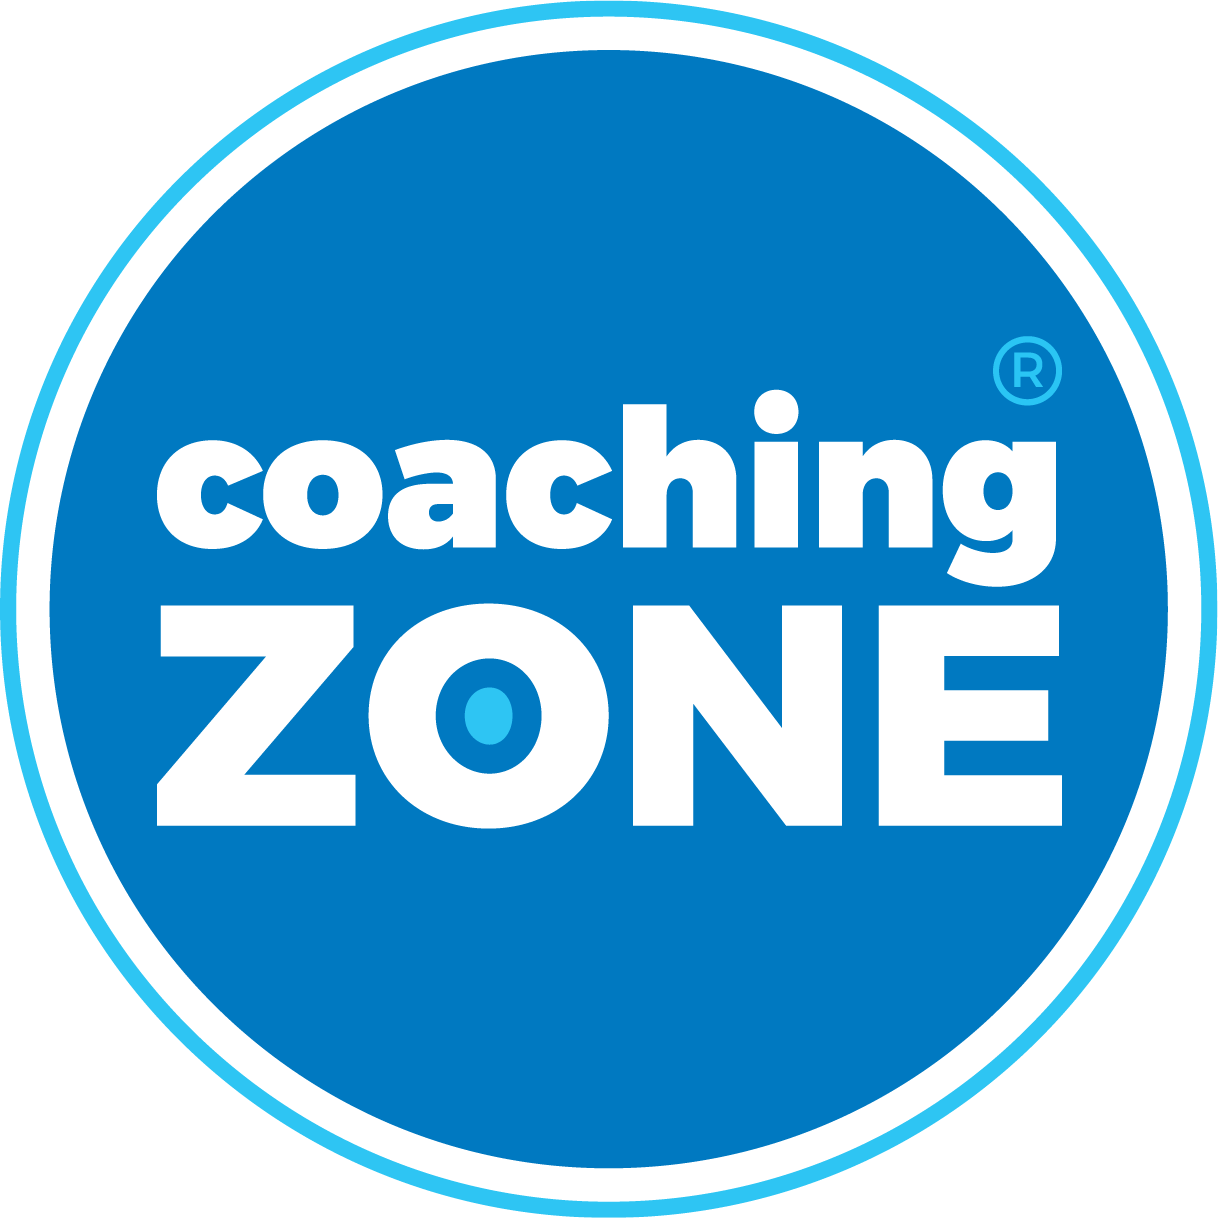 Coaching Zone